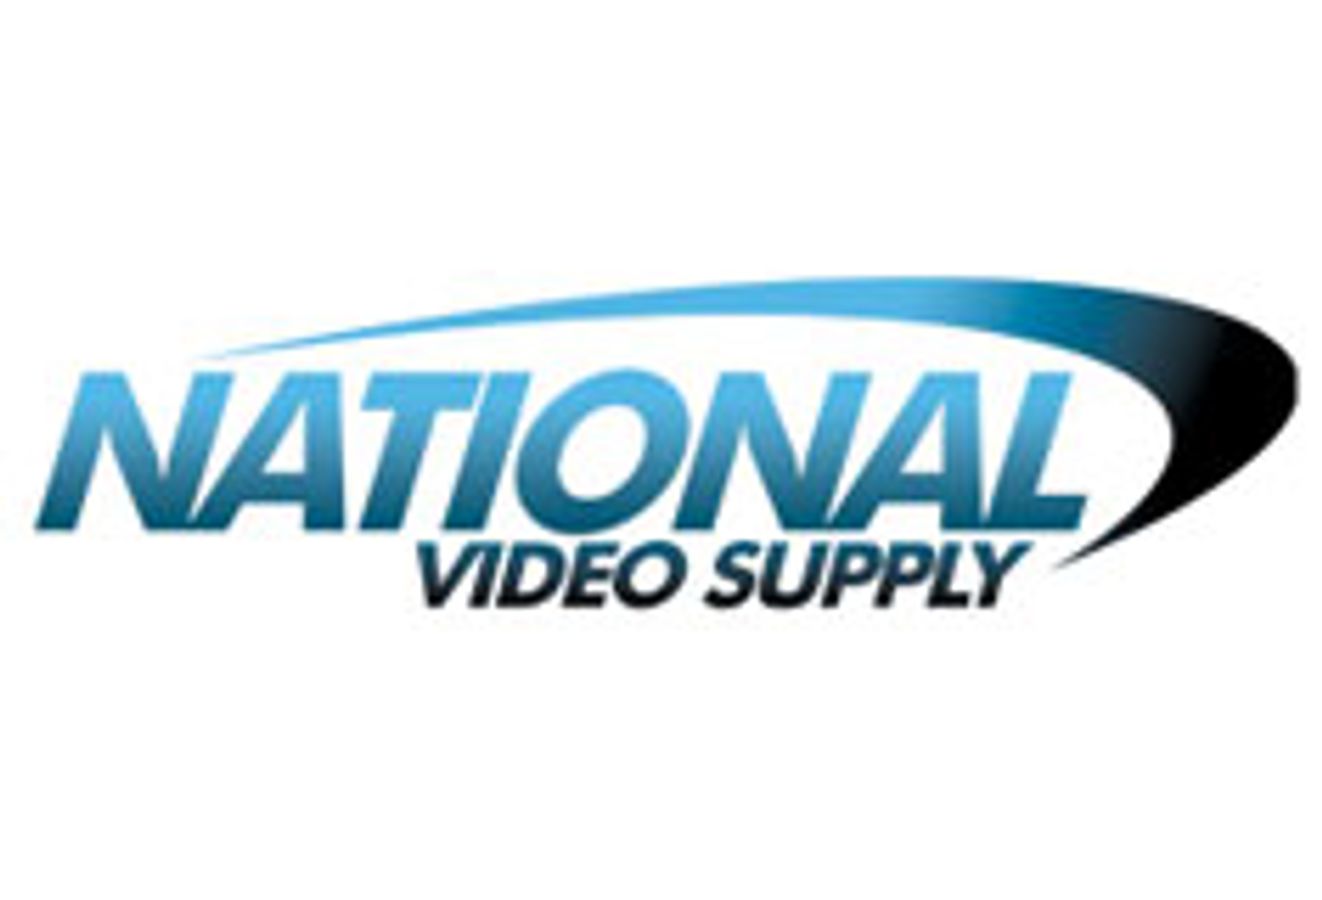 National Video Supply | AVN